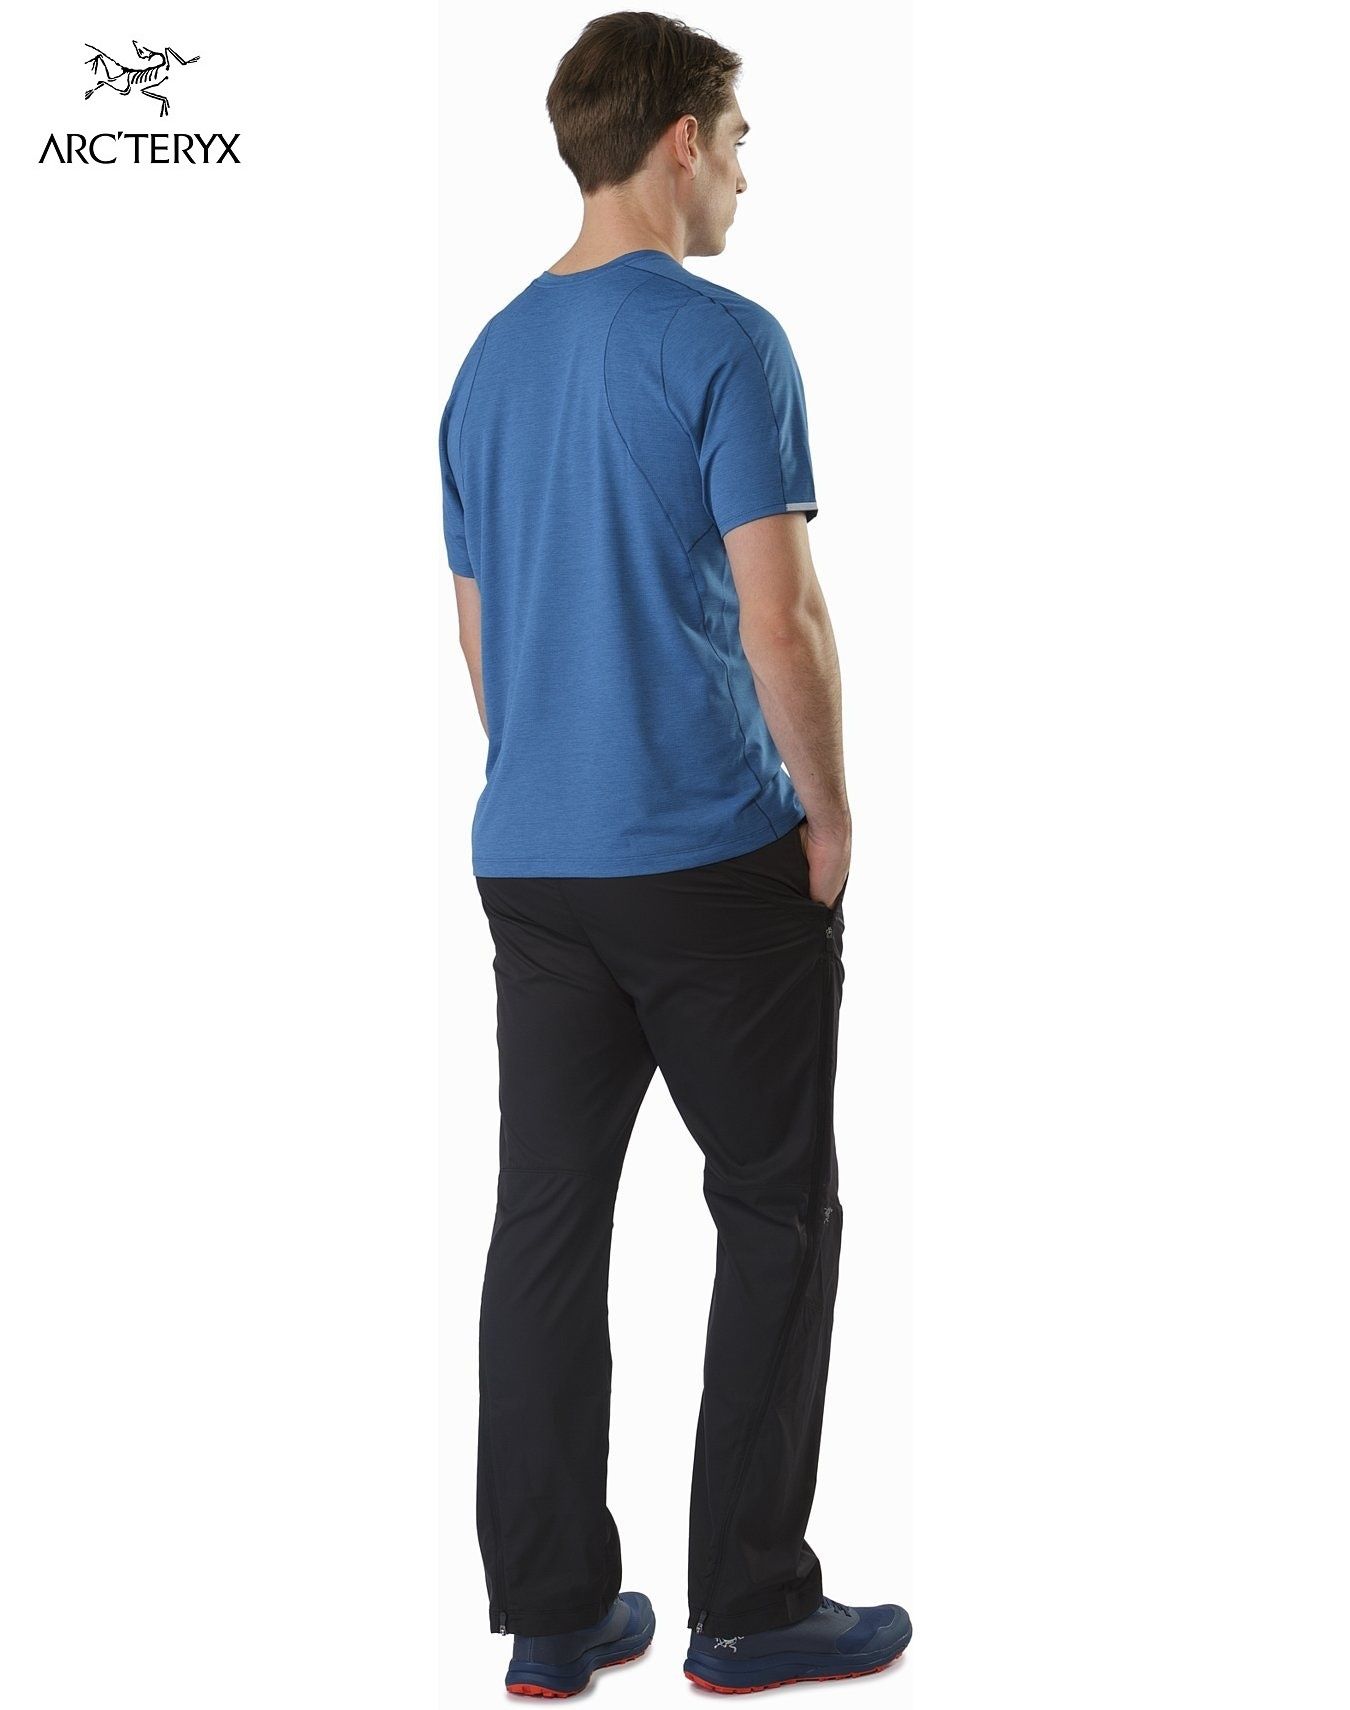 Arcteryx (Канада) - стрейчевые штаны из легкой быстросохнущий ткани